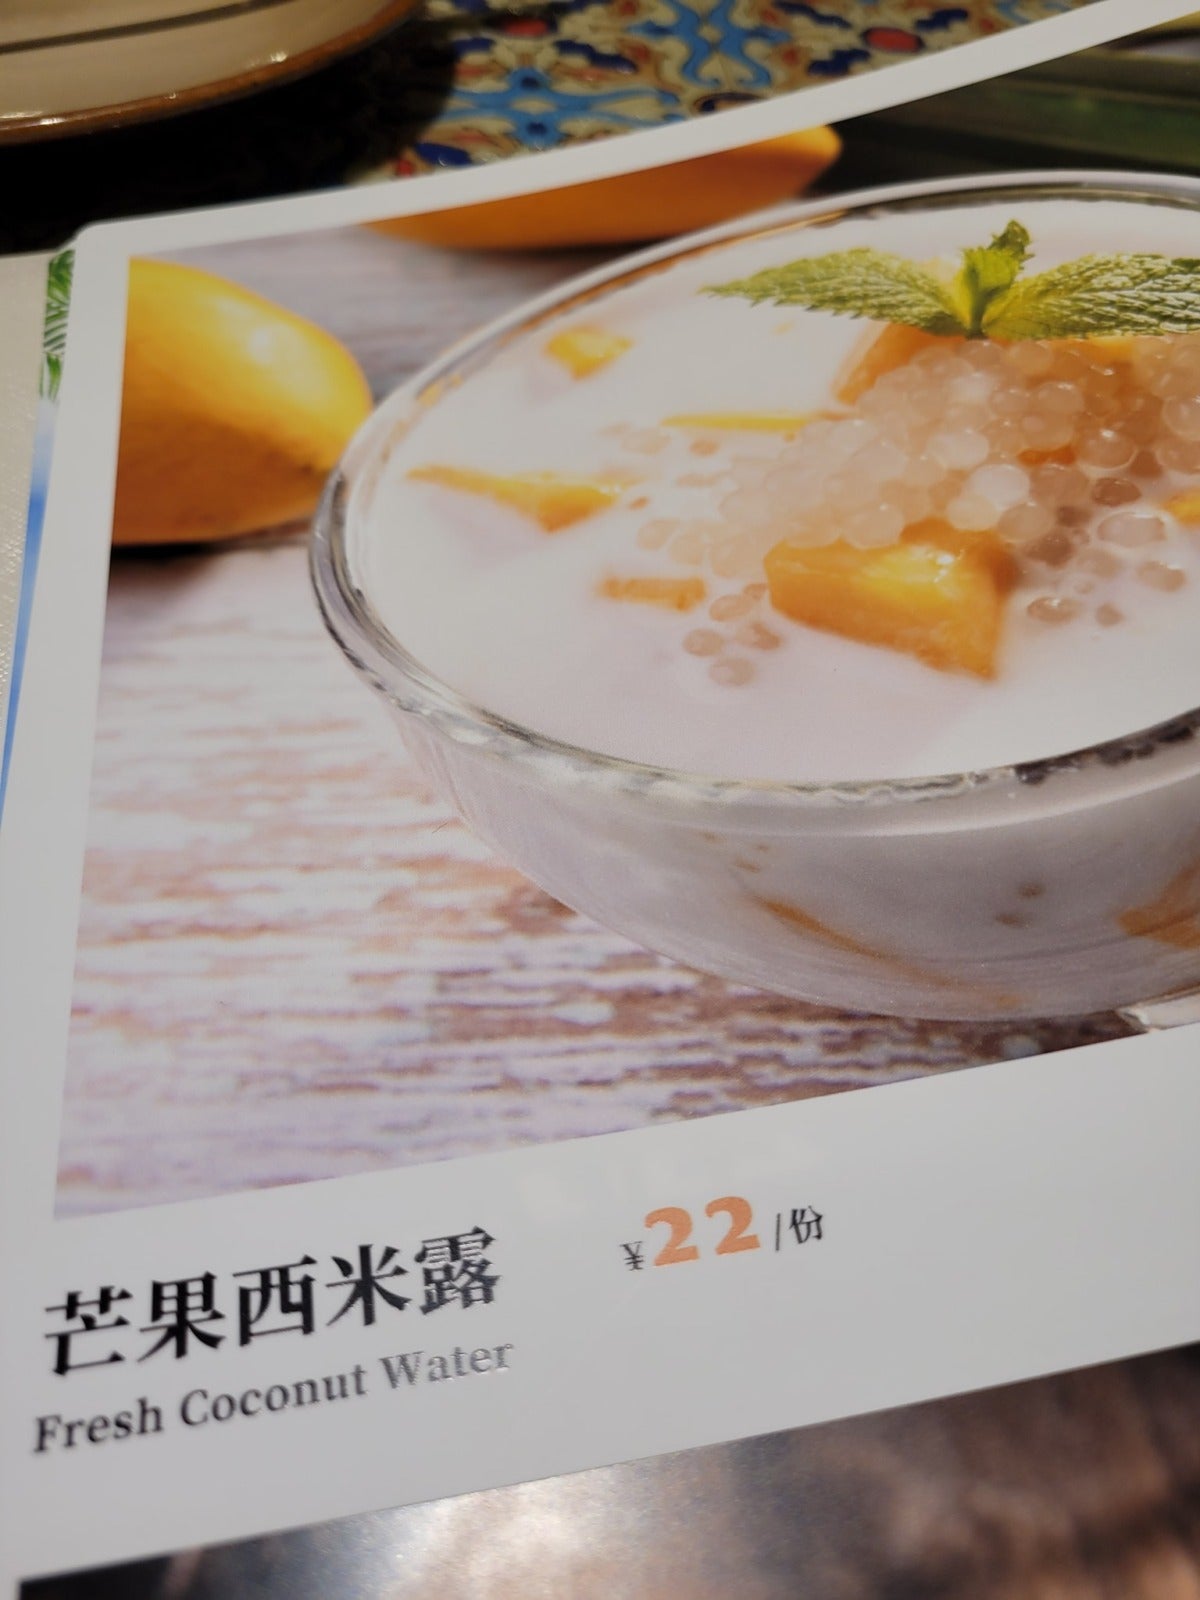 Restaurant In China Typo Translation 10